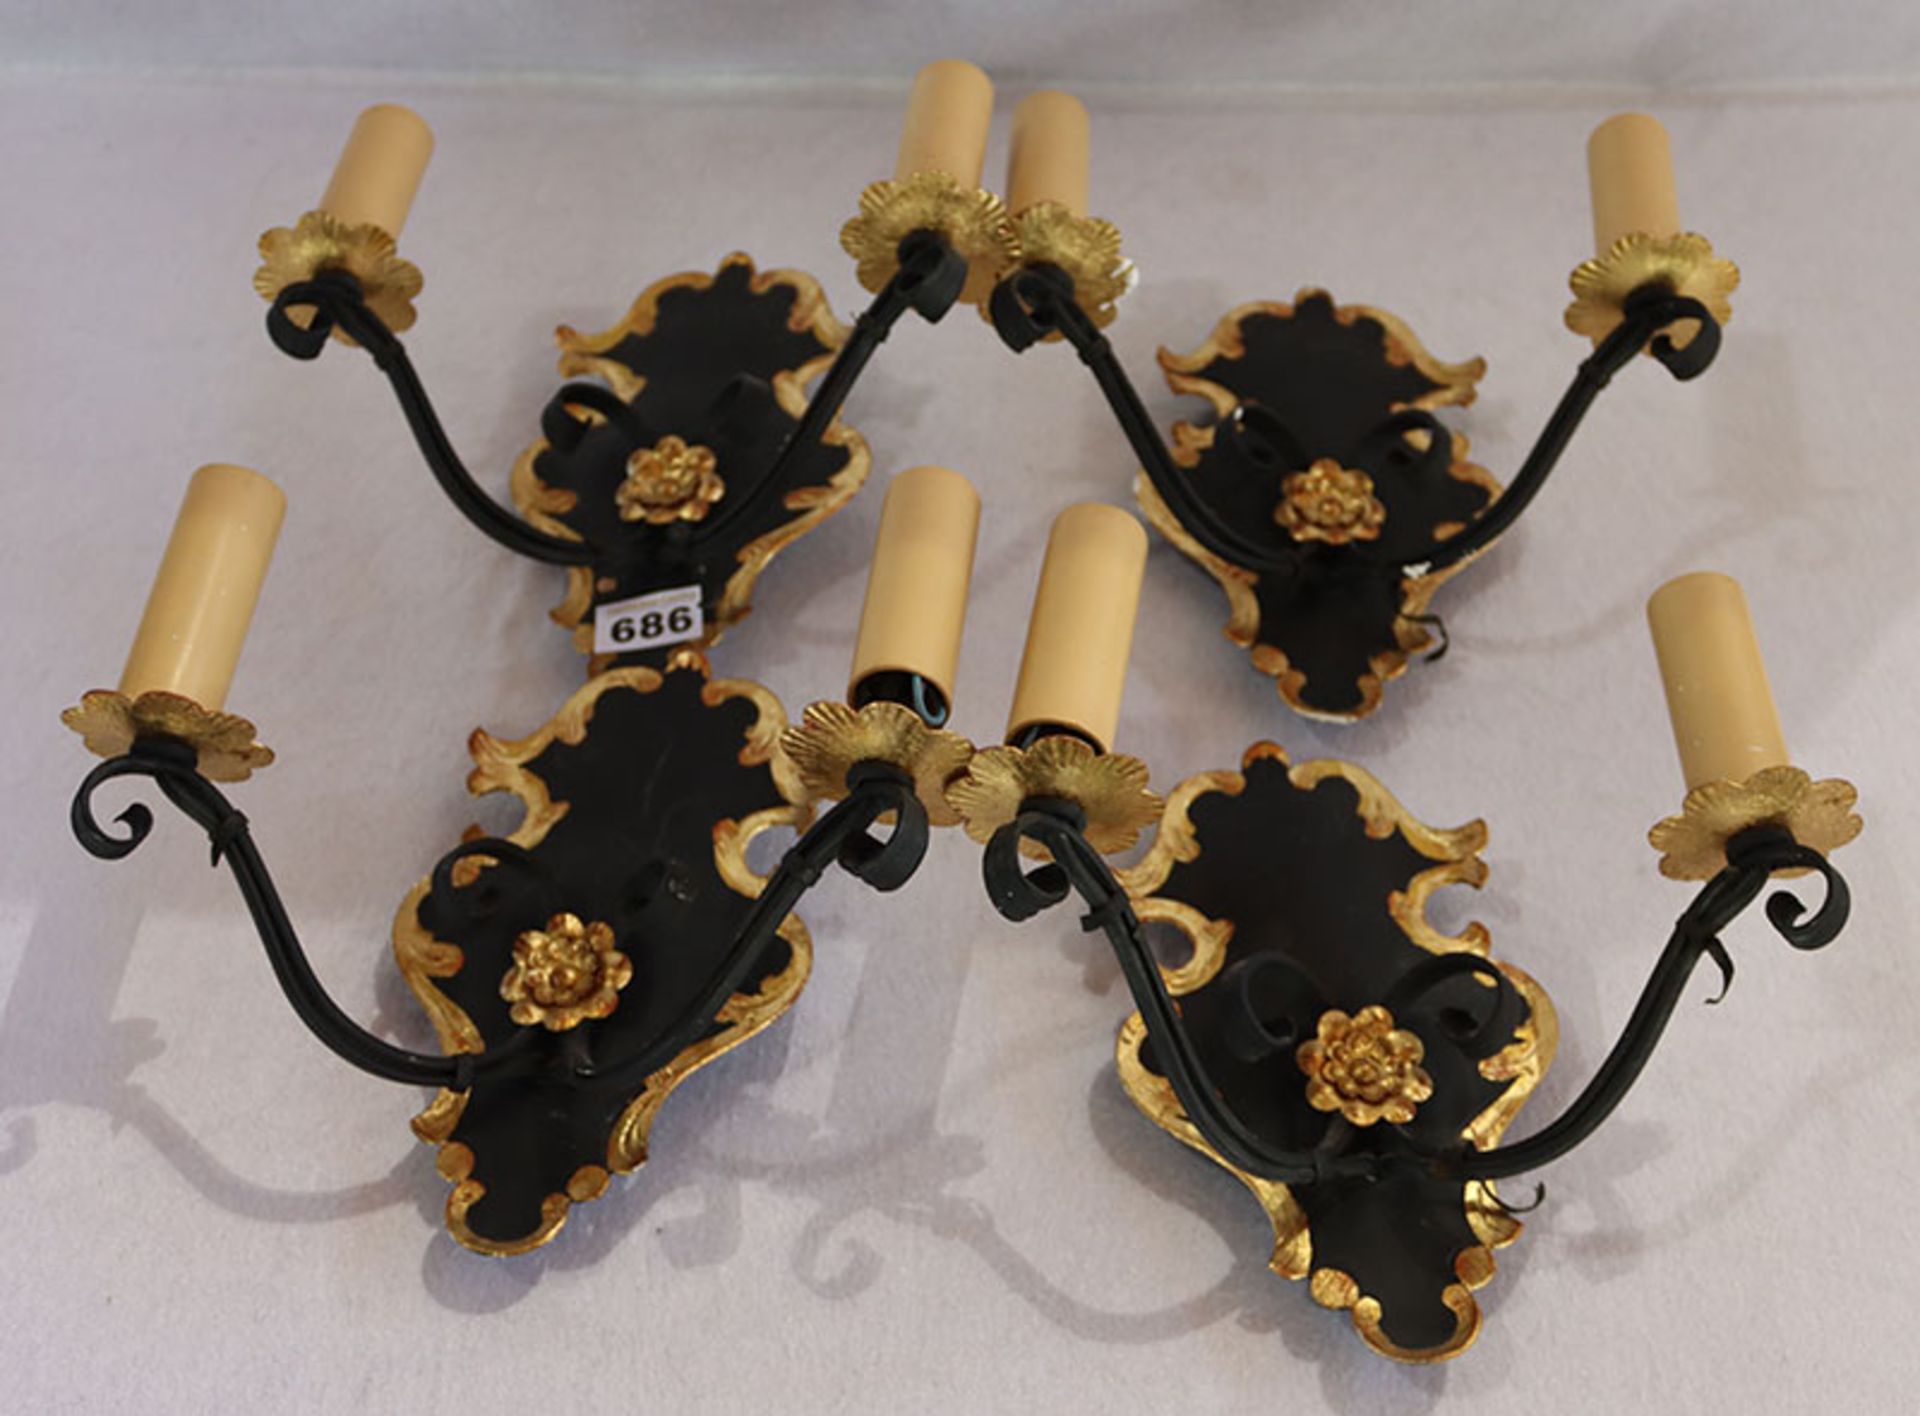 4 schmiedeeiserne Wandlampem, 2-armig, schwarz/gold, H 22 cm, B 27 cm, Funktion nicht geprüft,